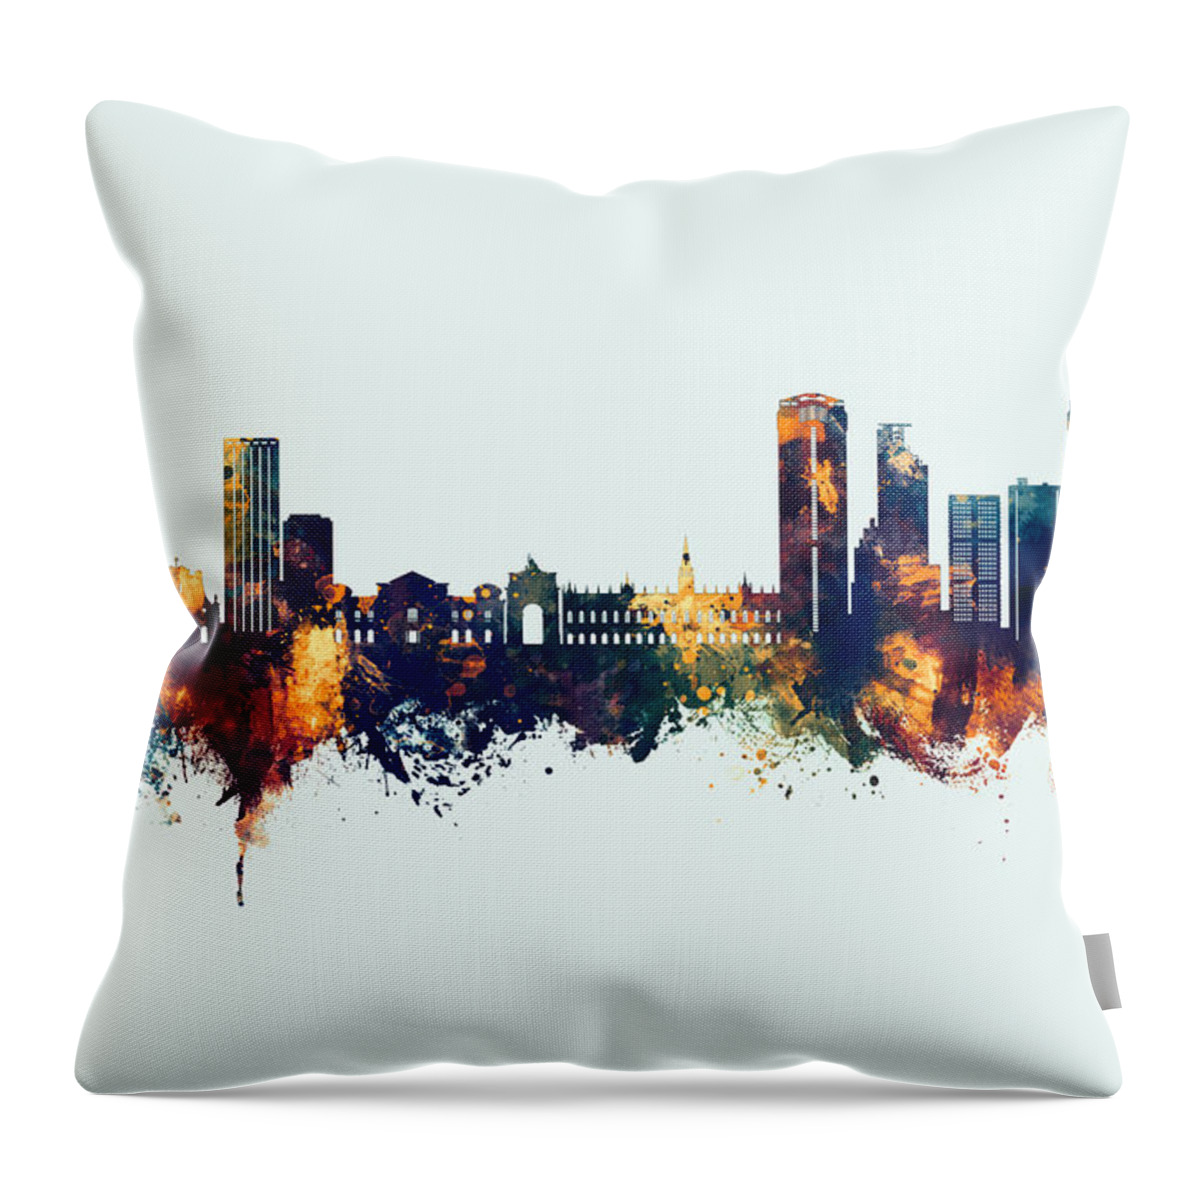 Caracas Throw Pillow featuring the digital art Caracas Venezuela Skyline #55 by Michael Tompsett